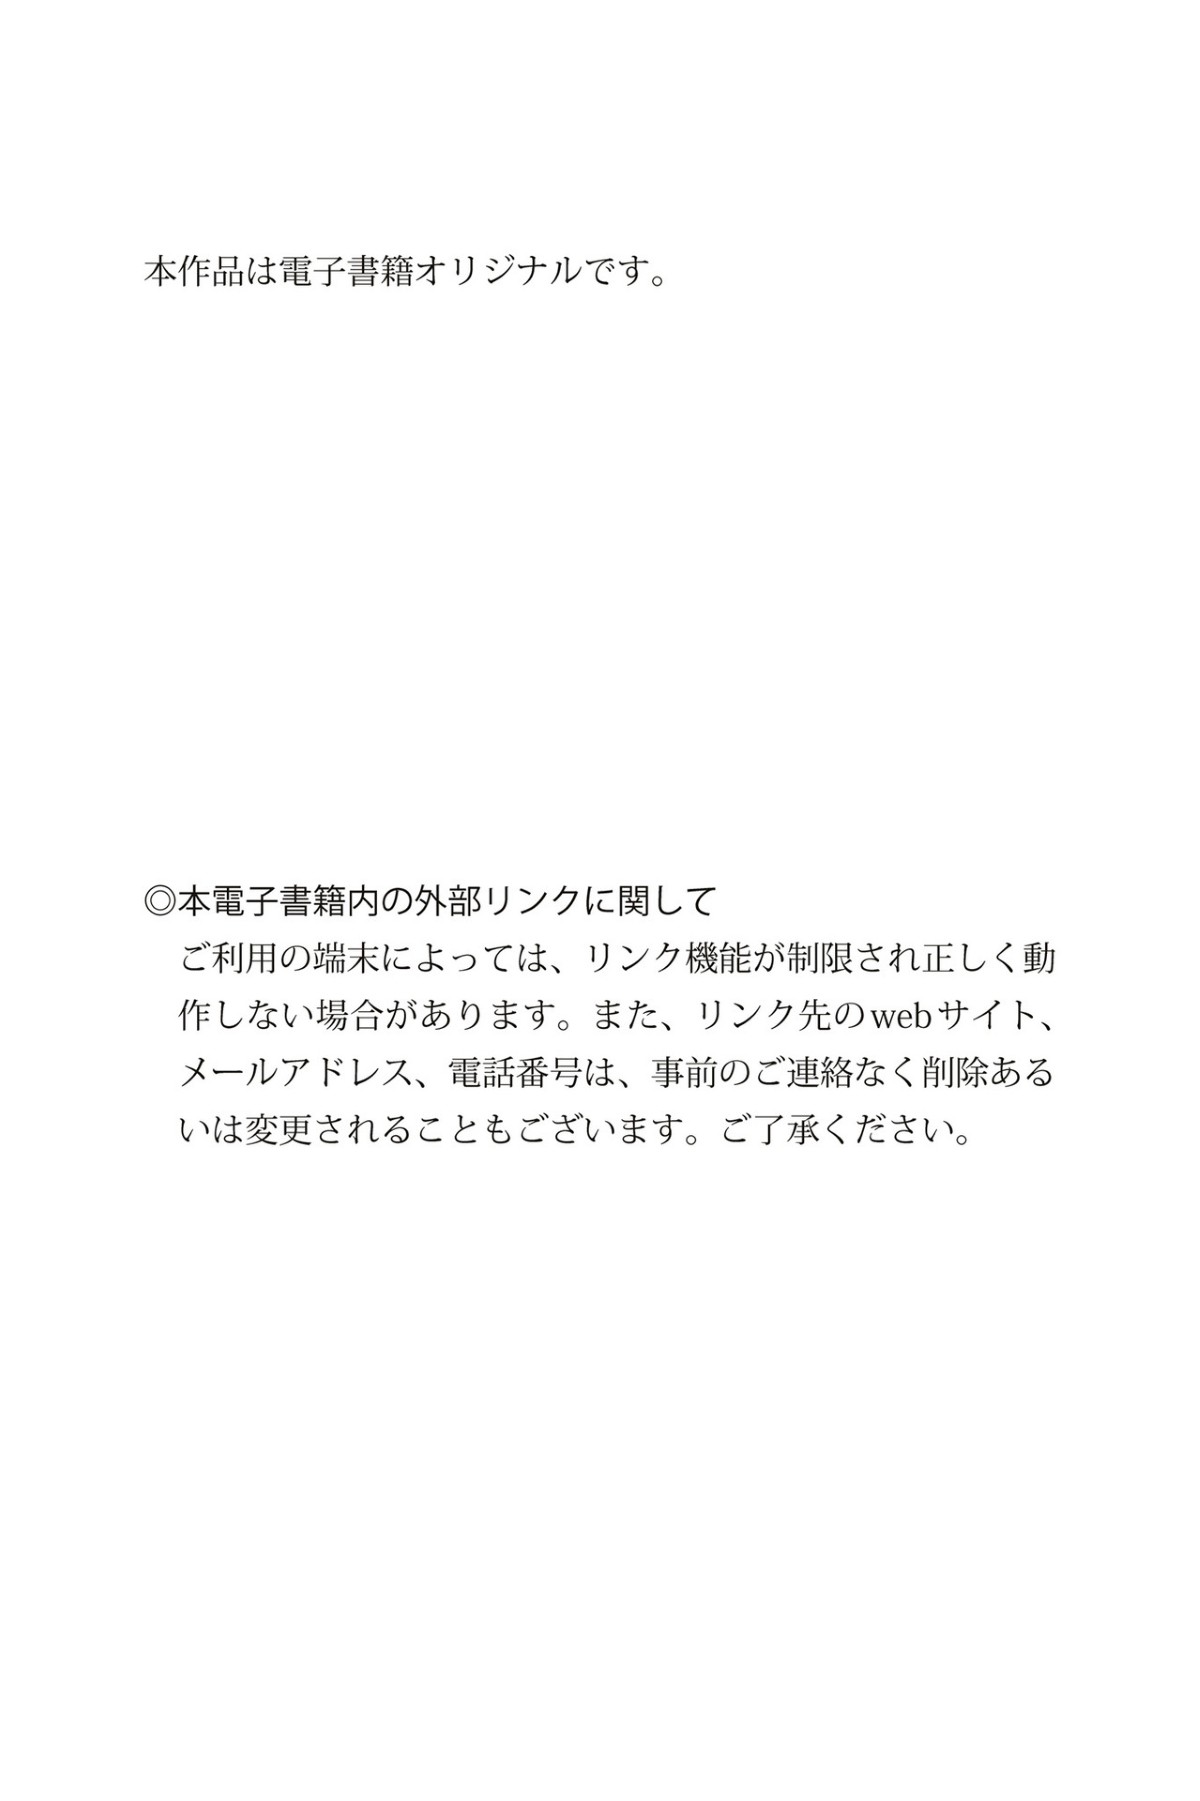 Weekly Gendai Photobook Yamada Kana 山田かな KANA Sensual White No Watermark 0065 3216741269.jpg